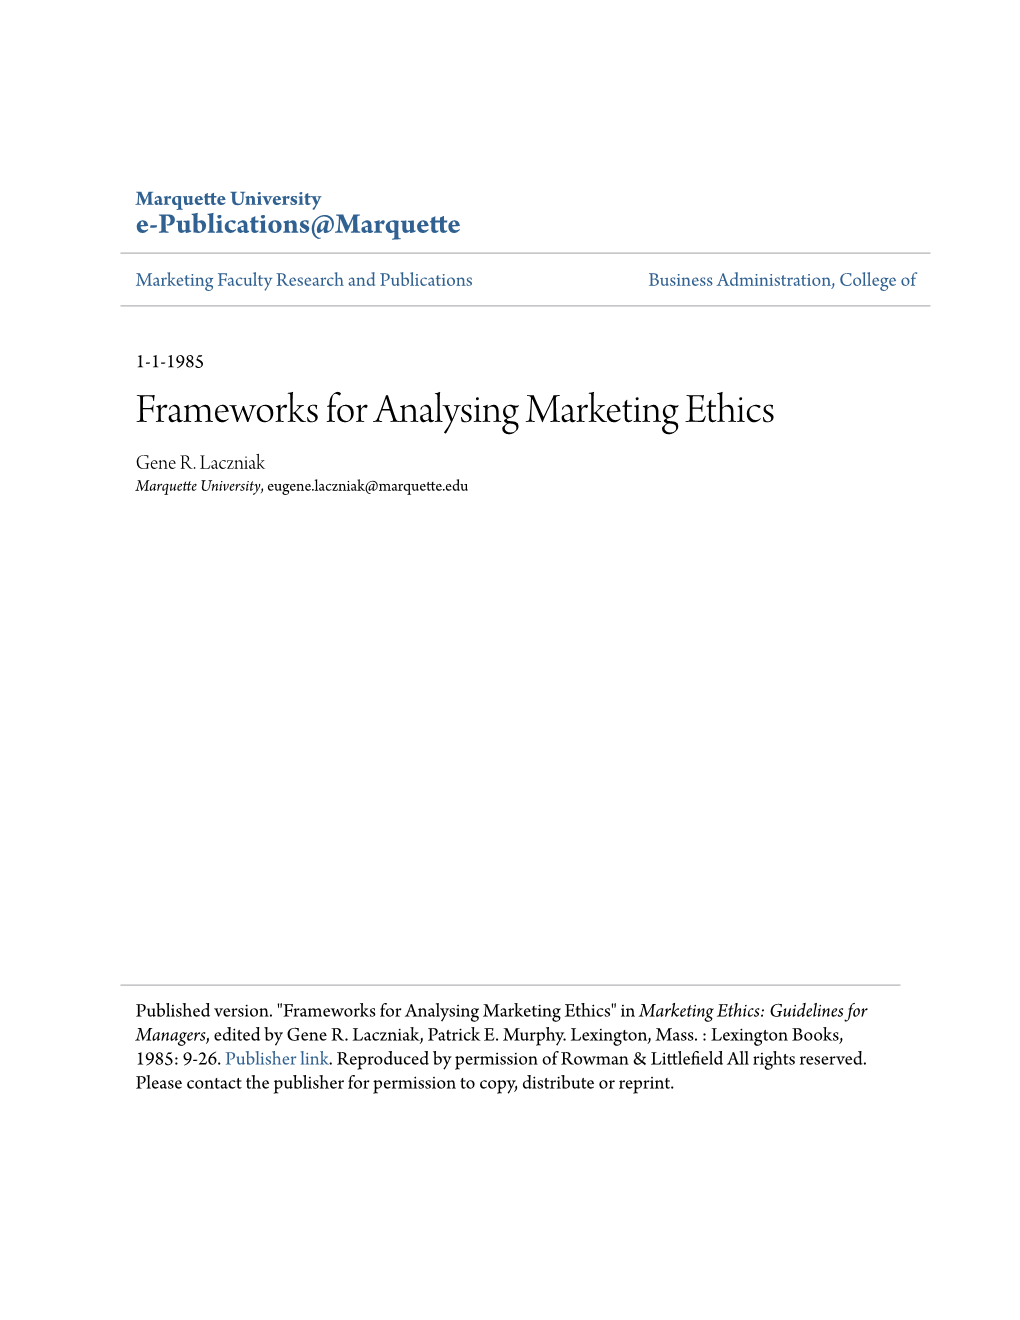 Frameworks for Analysing Marketing Ethics Gene R